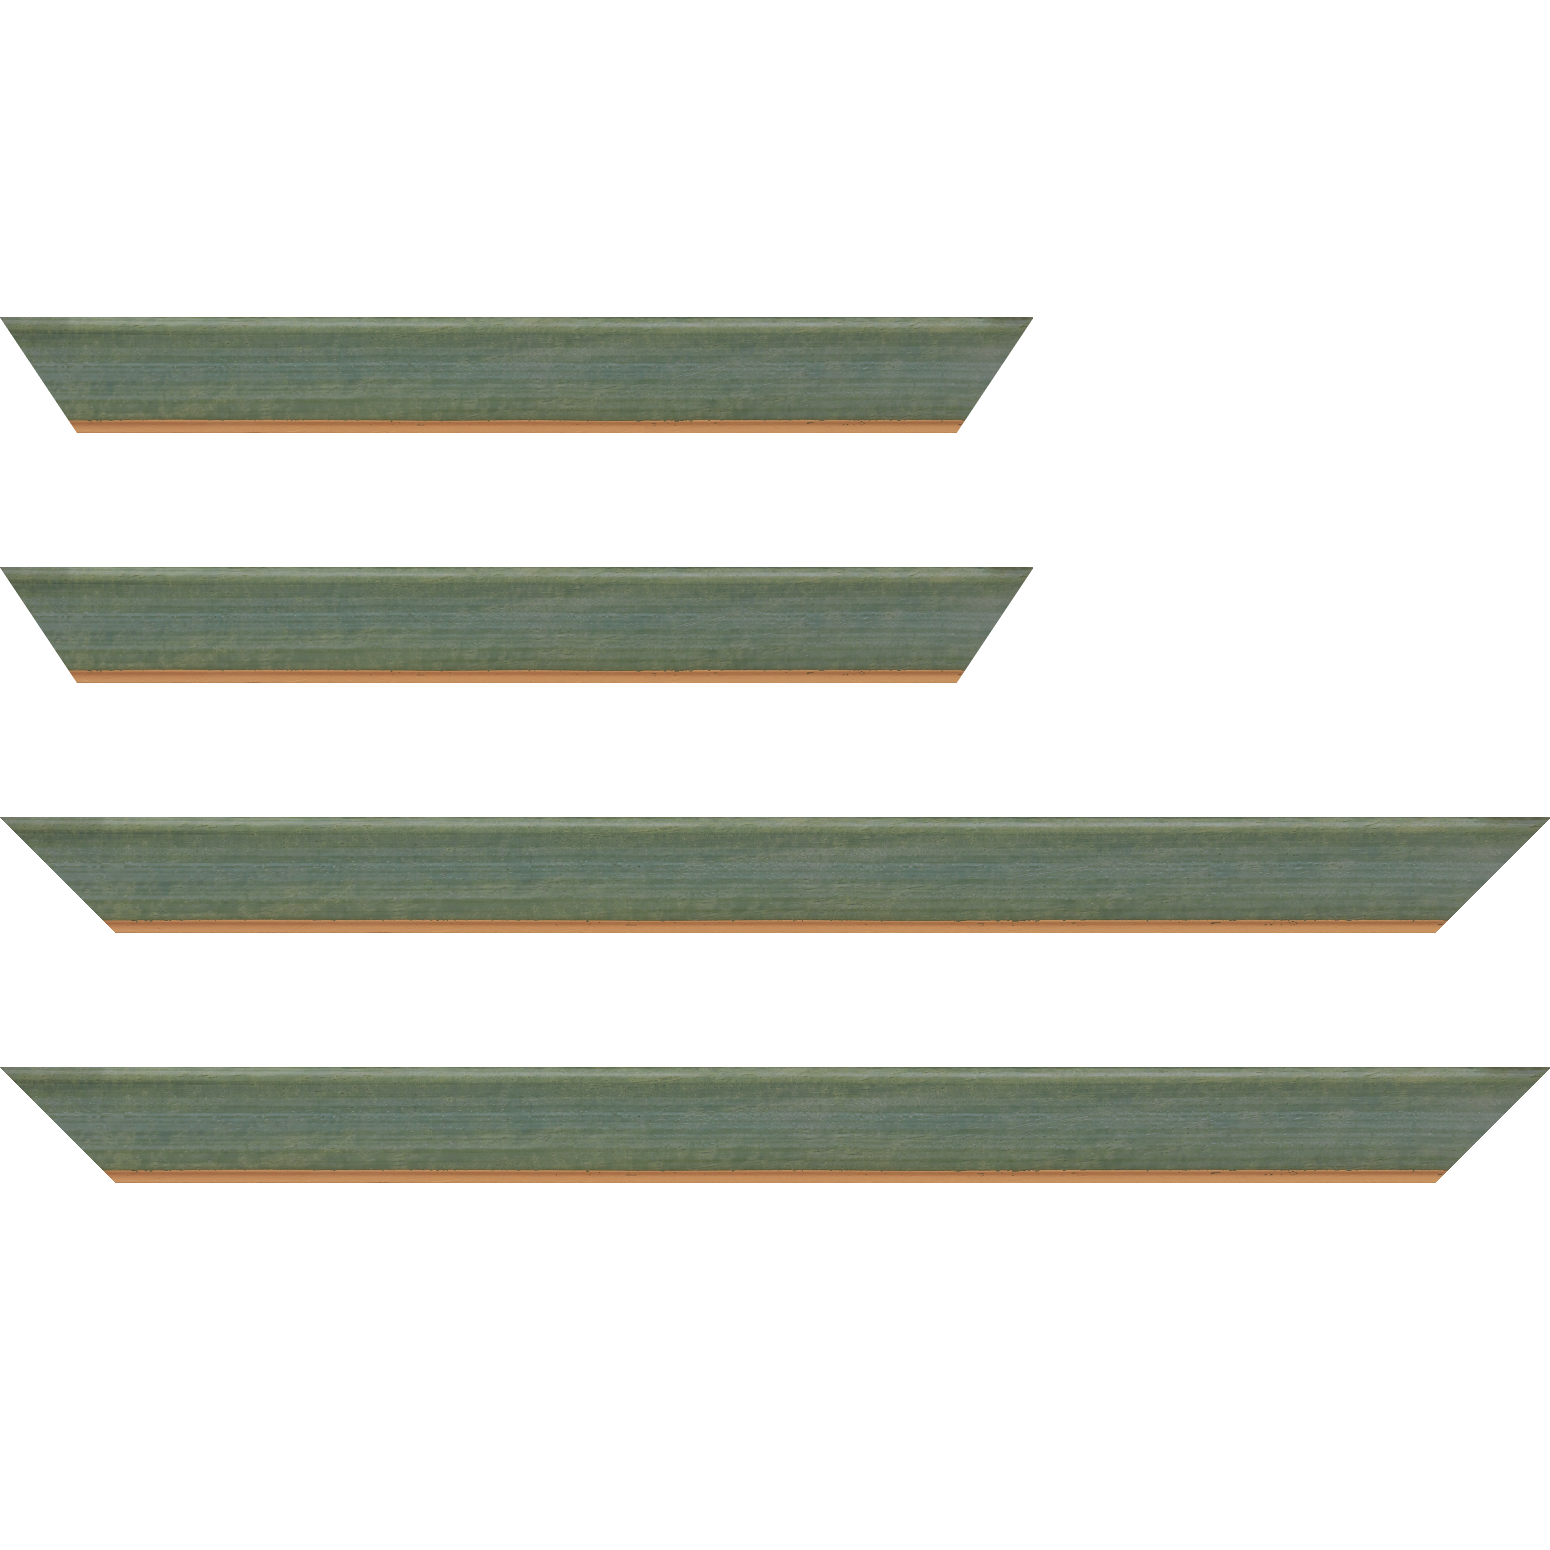 Baguette bois profil incurvé largeur 3.9cm couleur vert amande satiné filet or